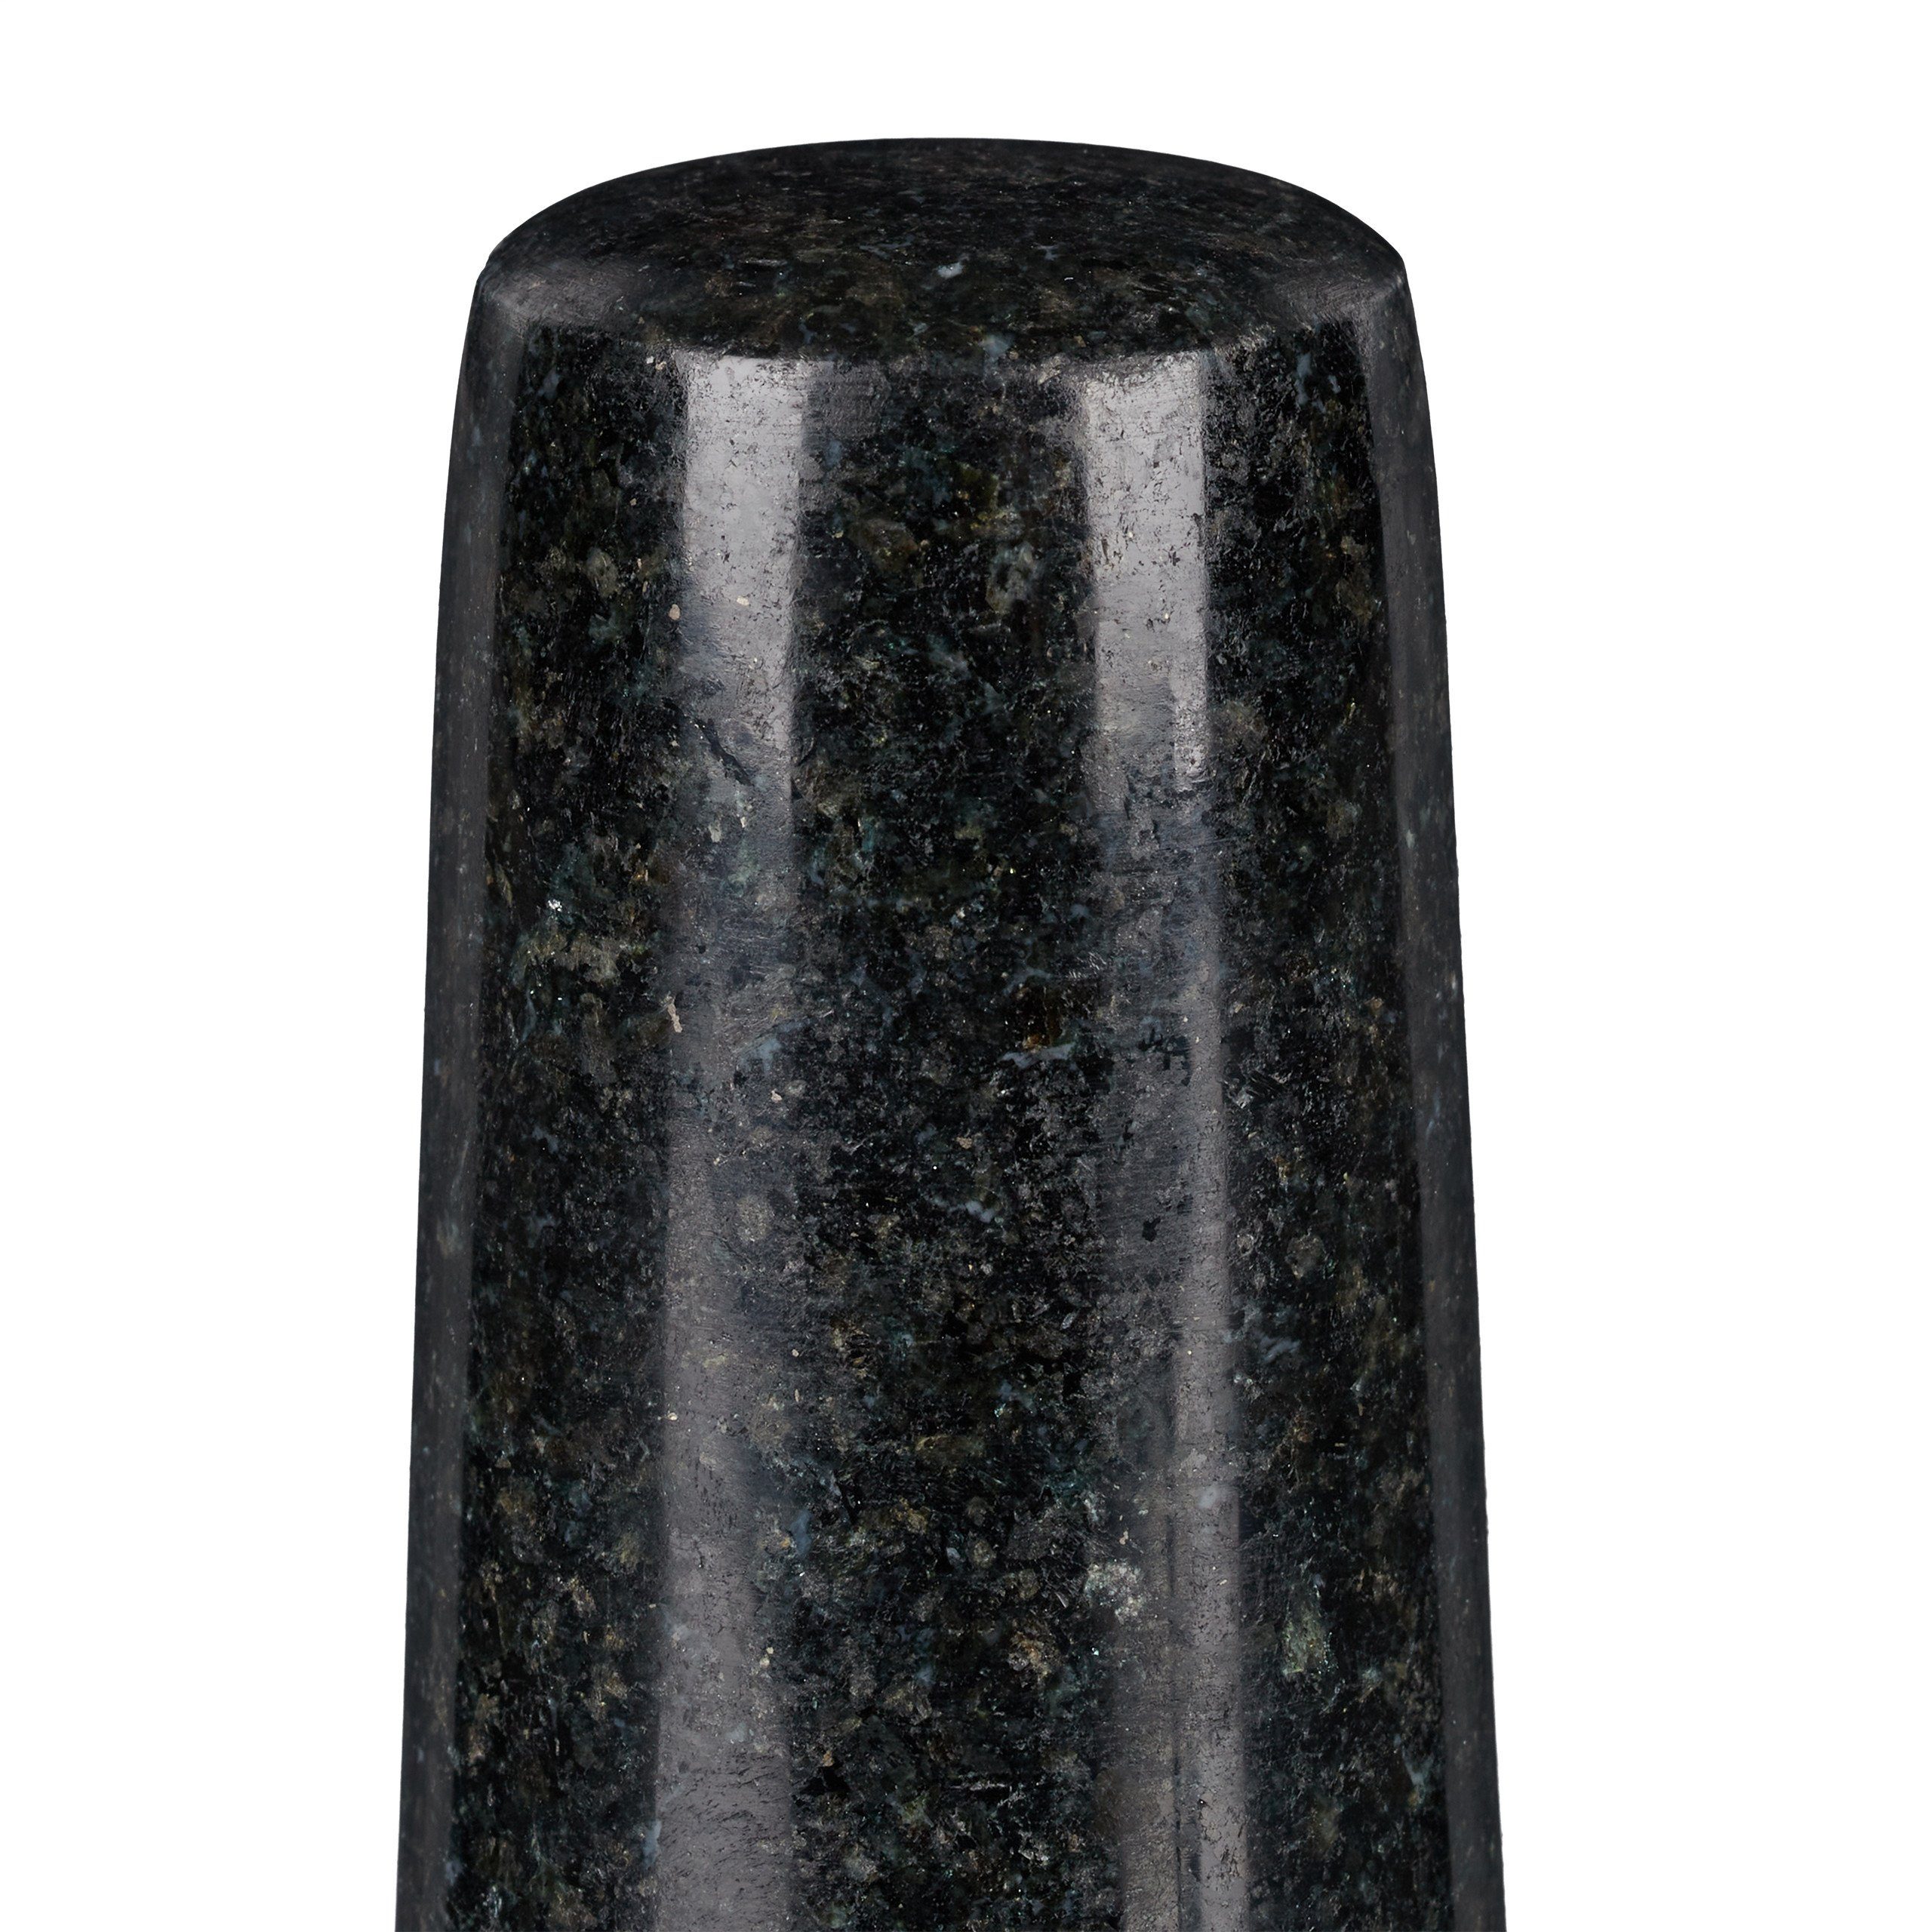 Mörser mit relaxdays Stößel Granit Mörser XL